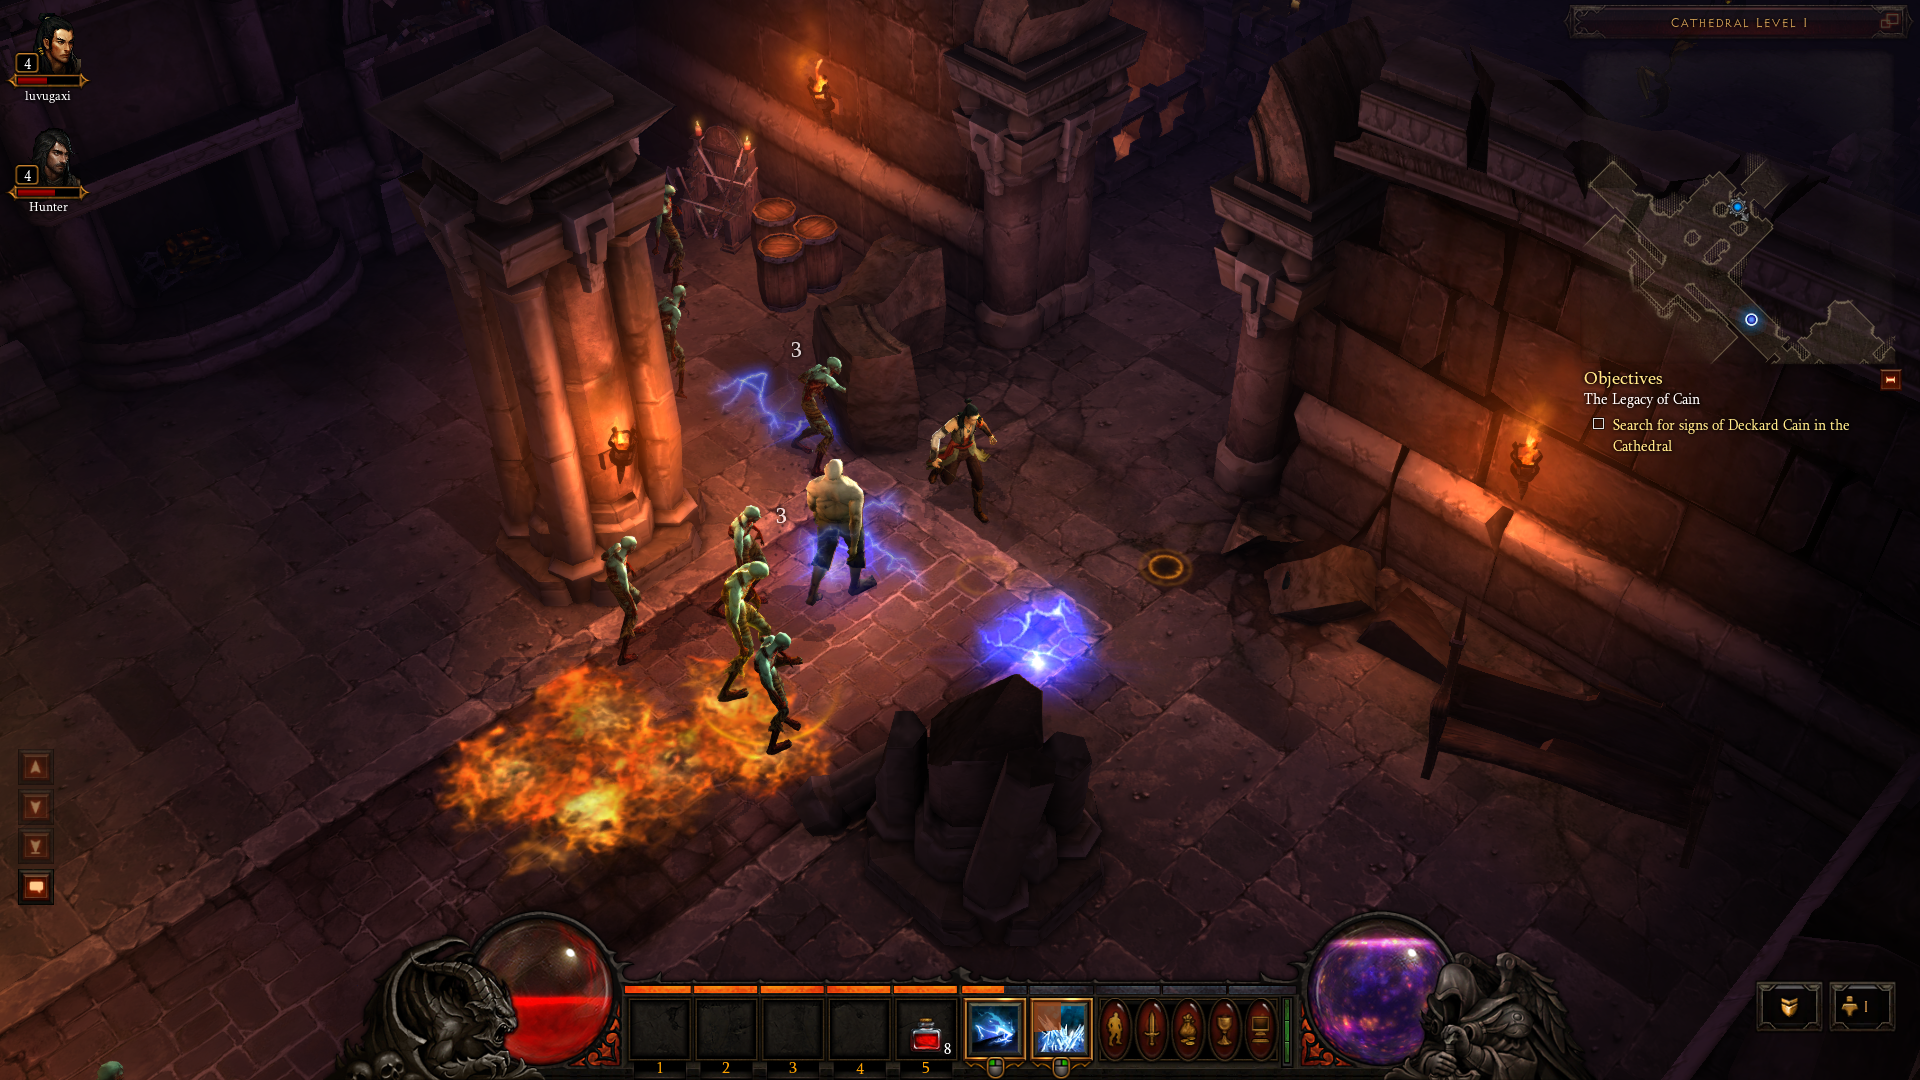 G1 - G1 testou: nos consoles, 'Diablo III' tem multiplayer local e mais  ação - notícias em Games